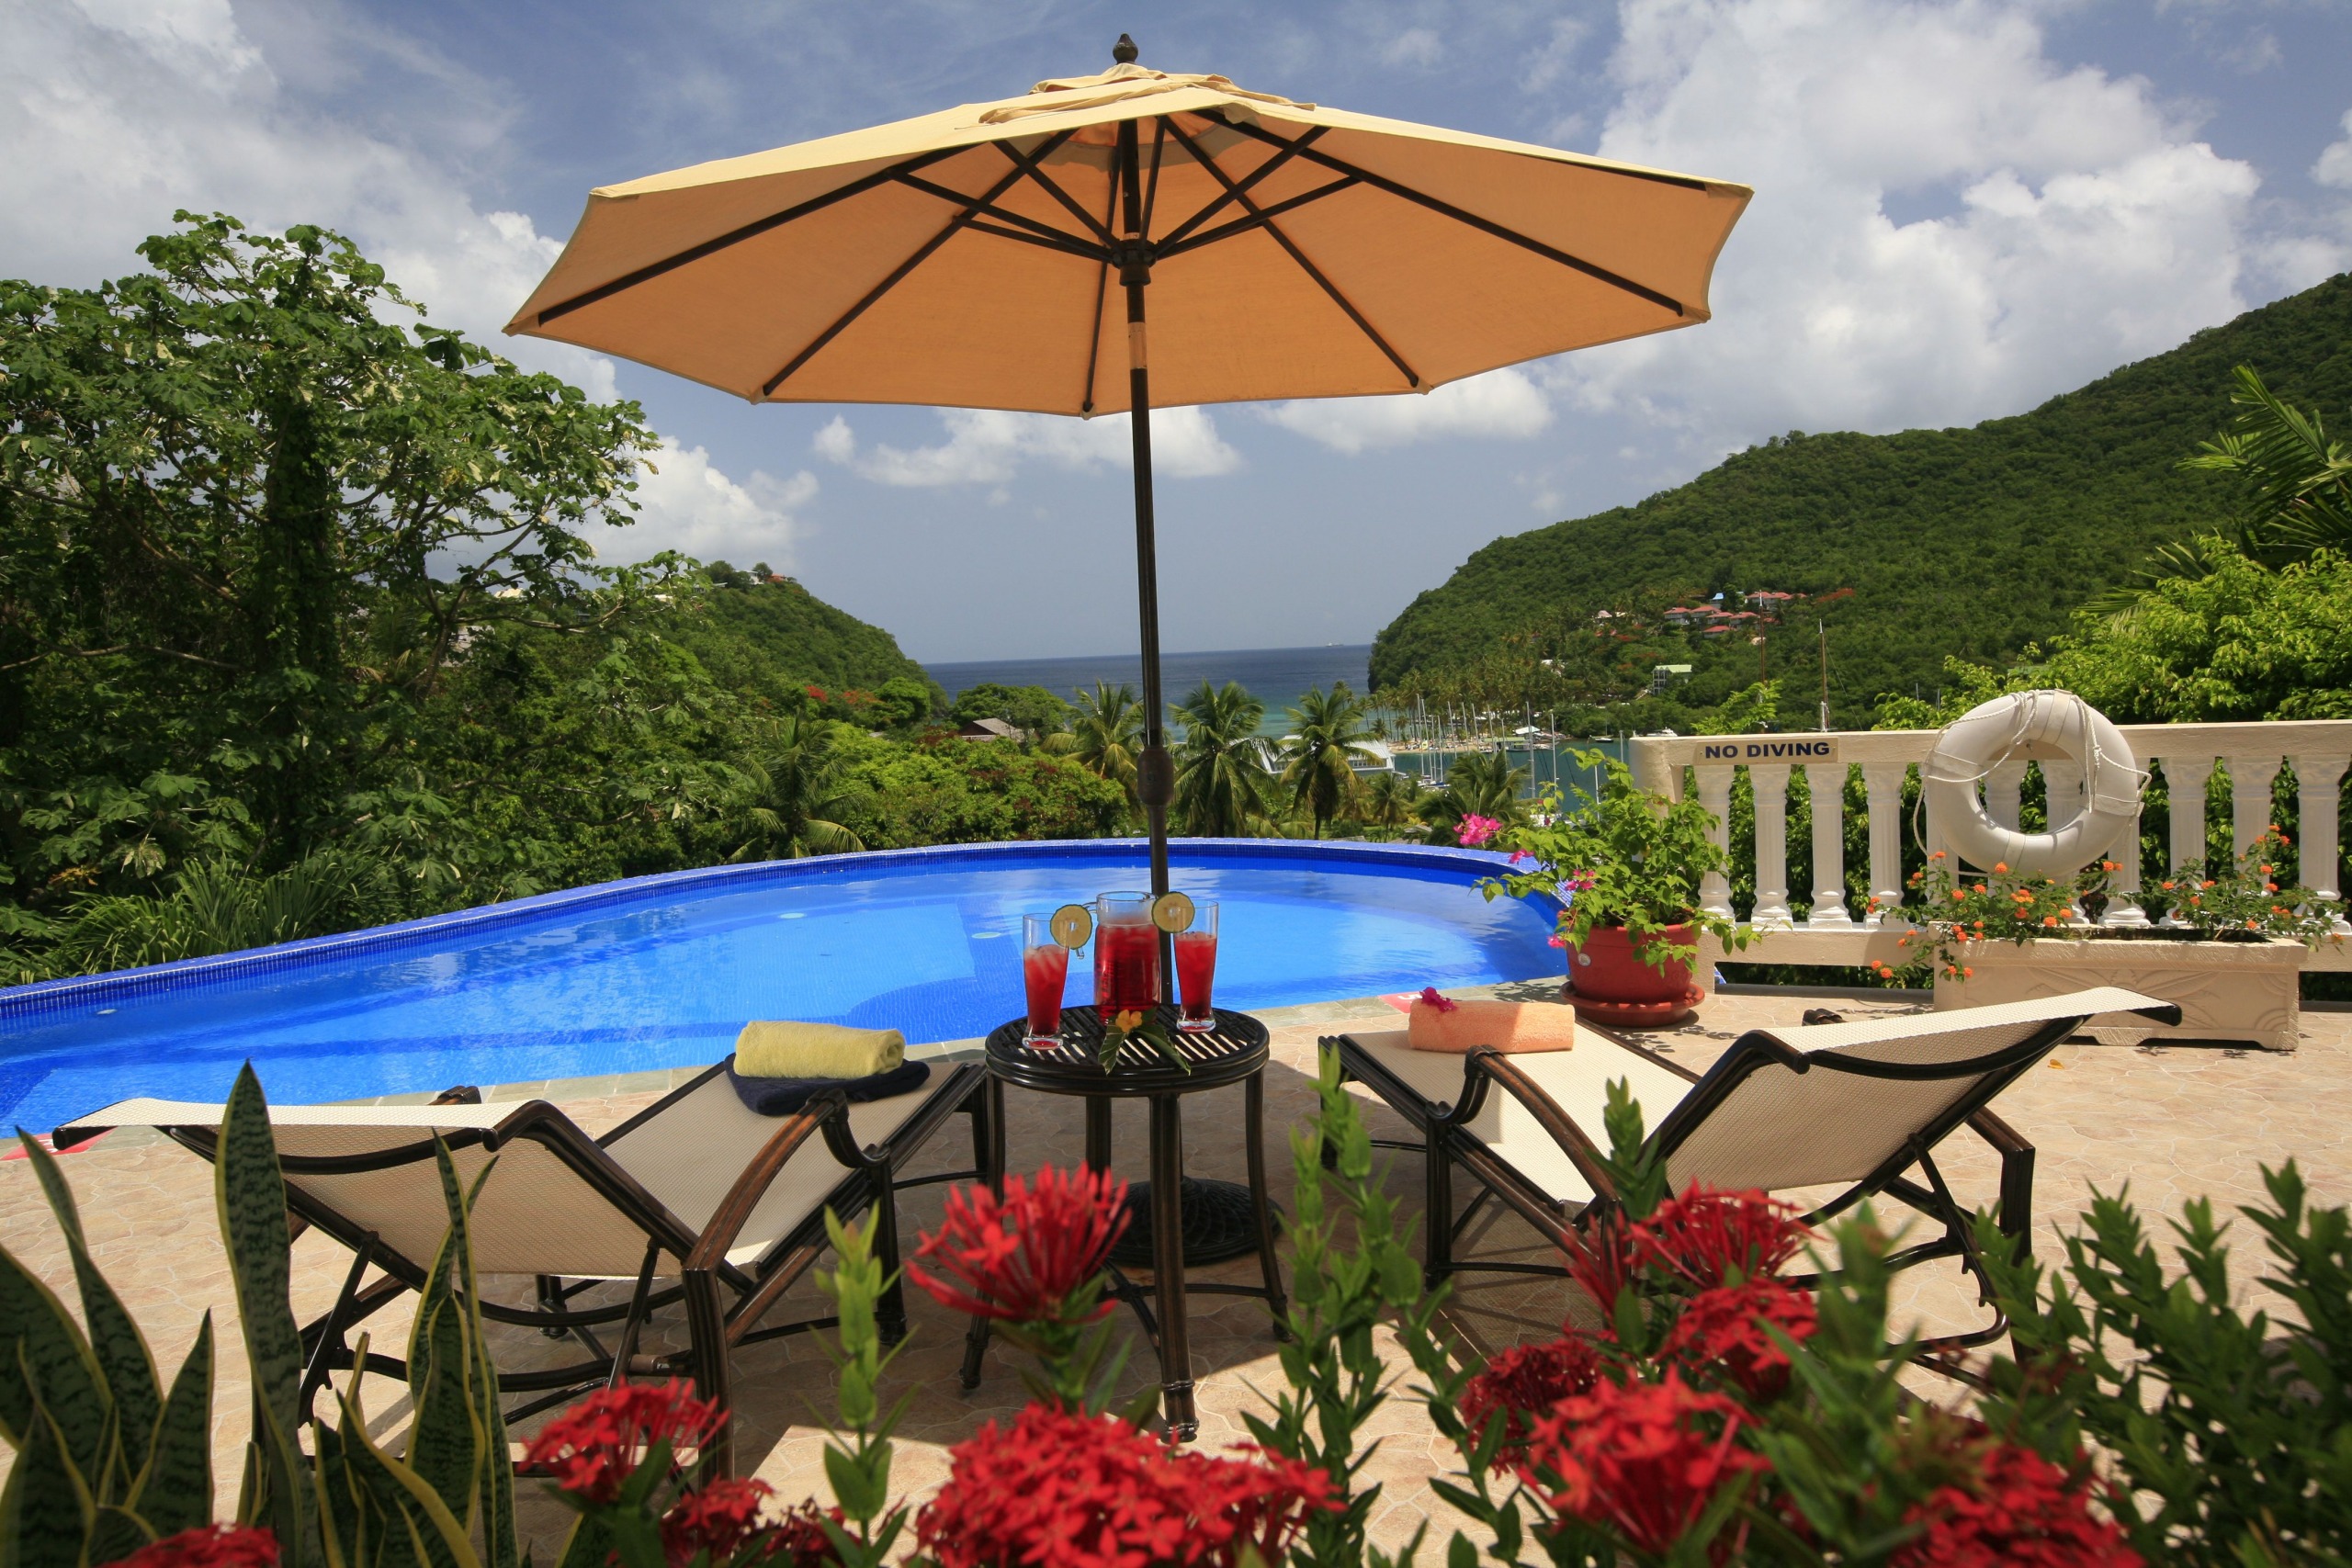 Luxury Villa For Sale in St Lucia, Villa Ashiana for sale